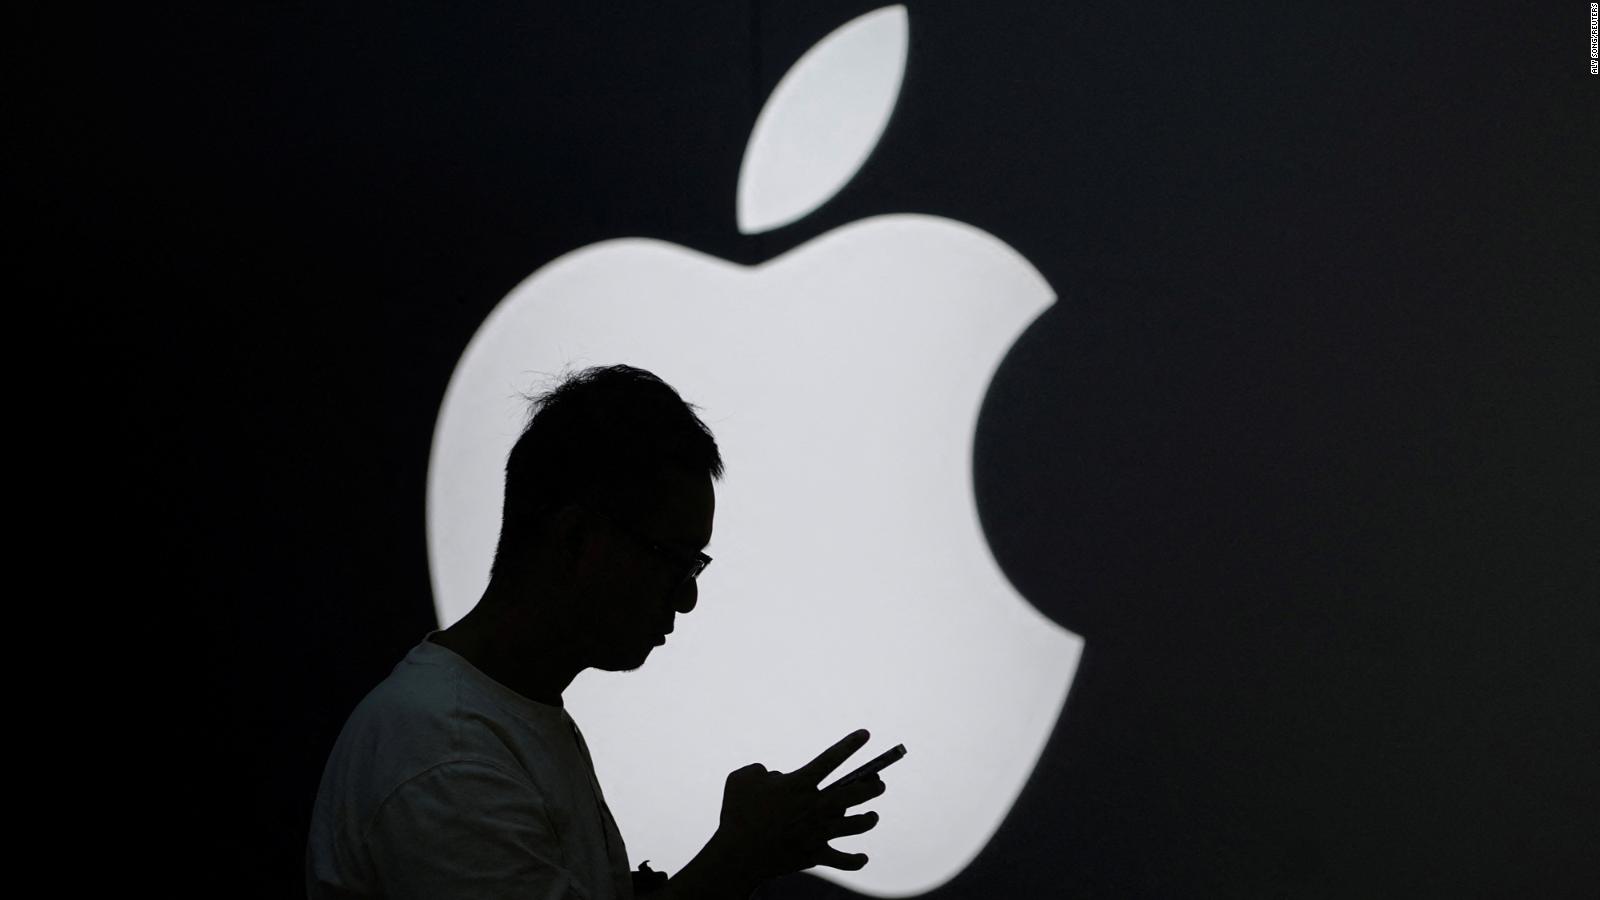 Apple es la marca más valiosa del mundo. Te decimos el top 5, según
Brand Finance